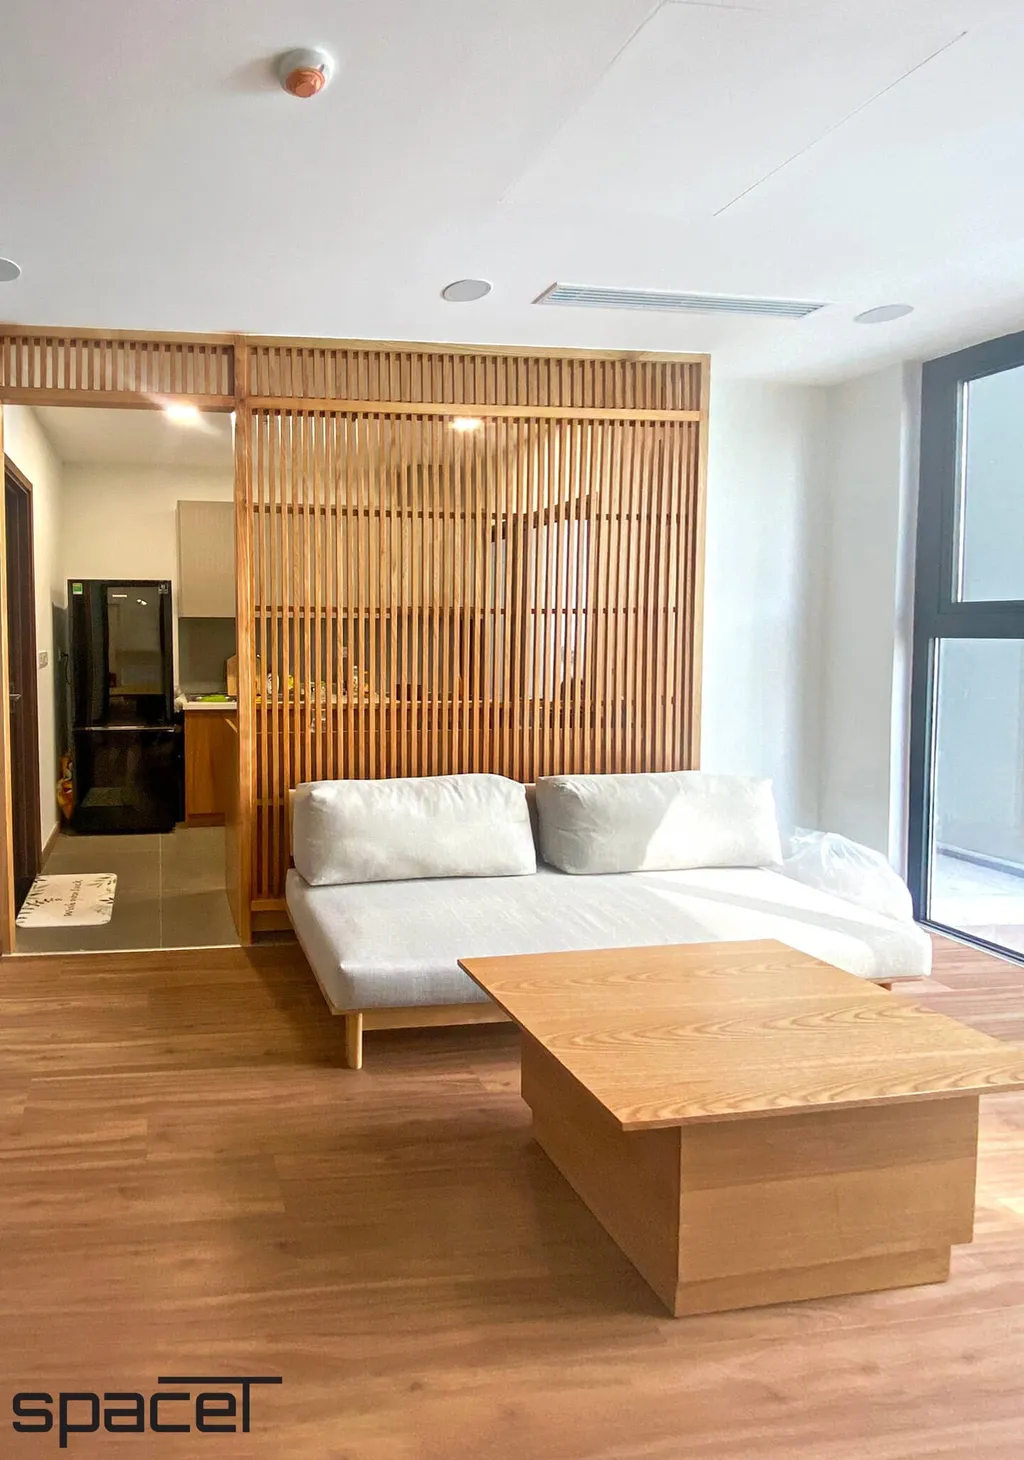 Phong cách Japandi cực kỳ tối ưu cho chung cư bởi sự đơn giản, mang đến sự gần gũi, ấm cúng và thoải mái cho gia chủ.